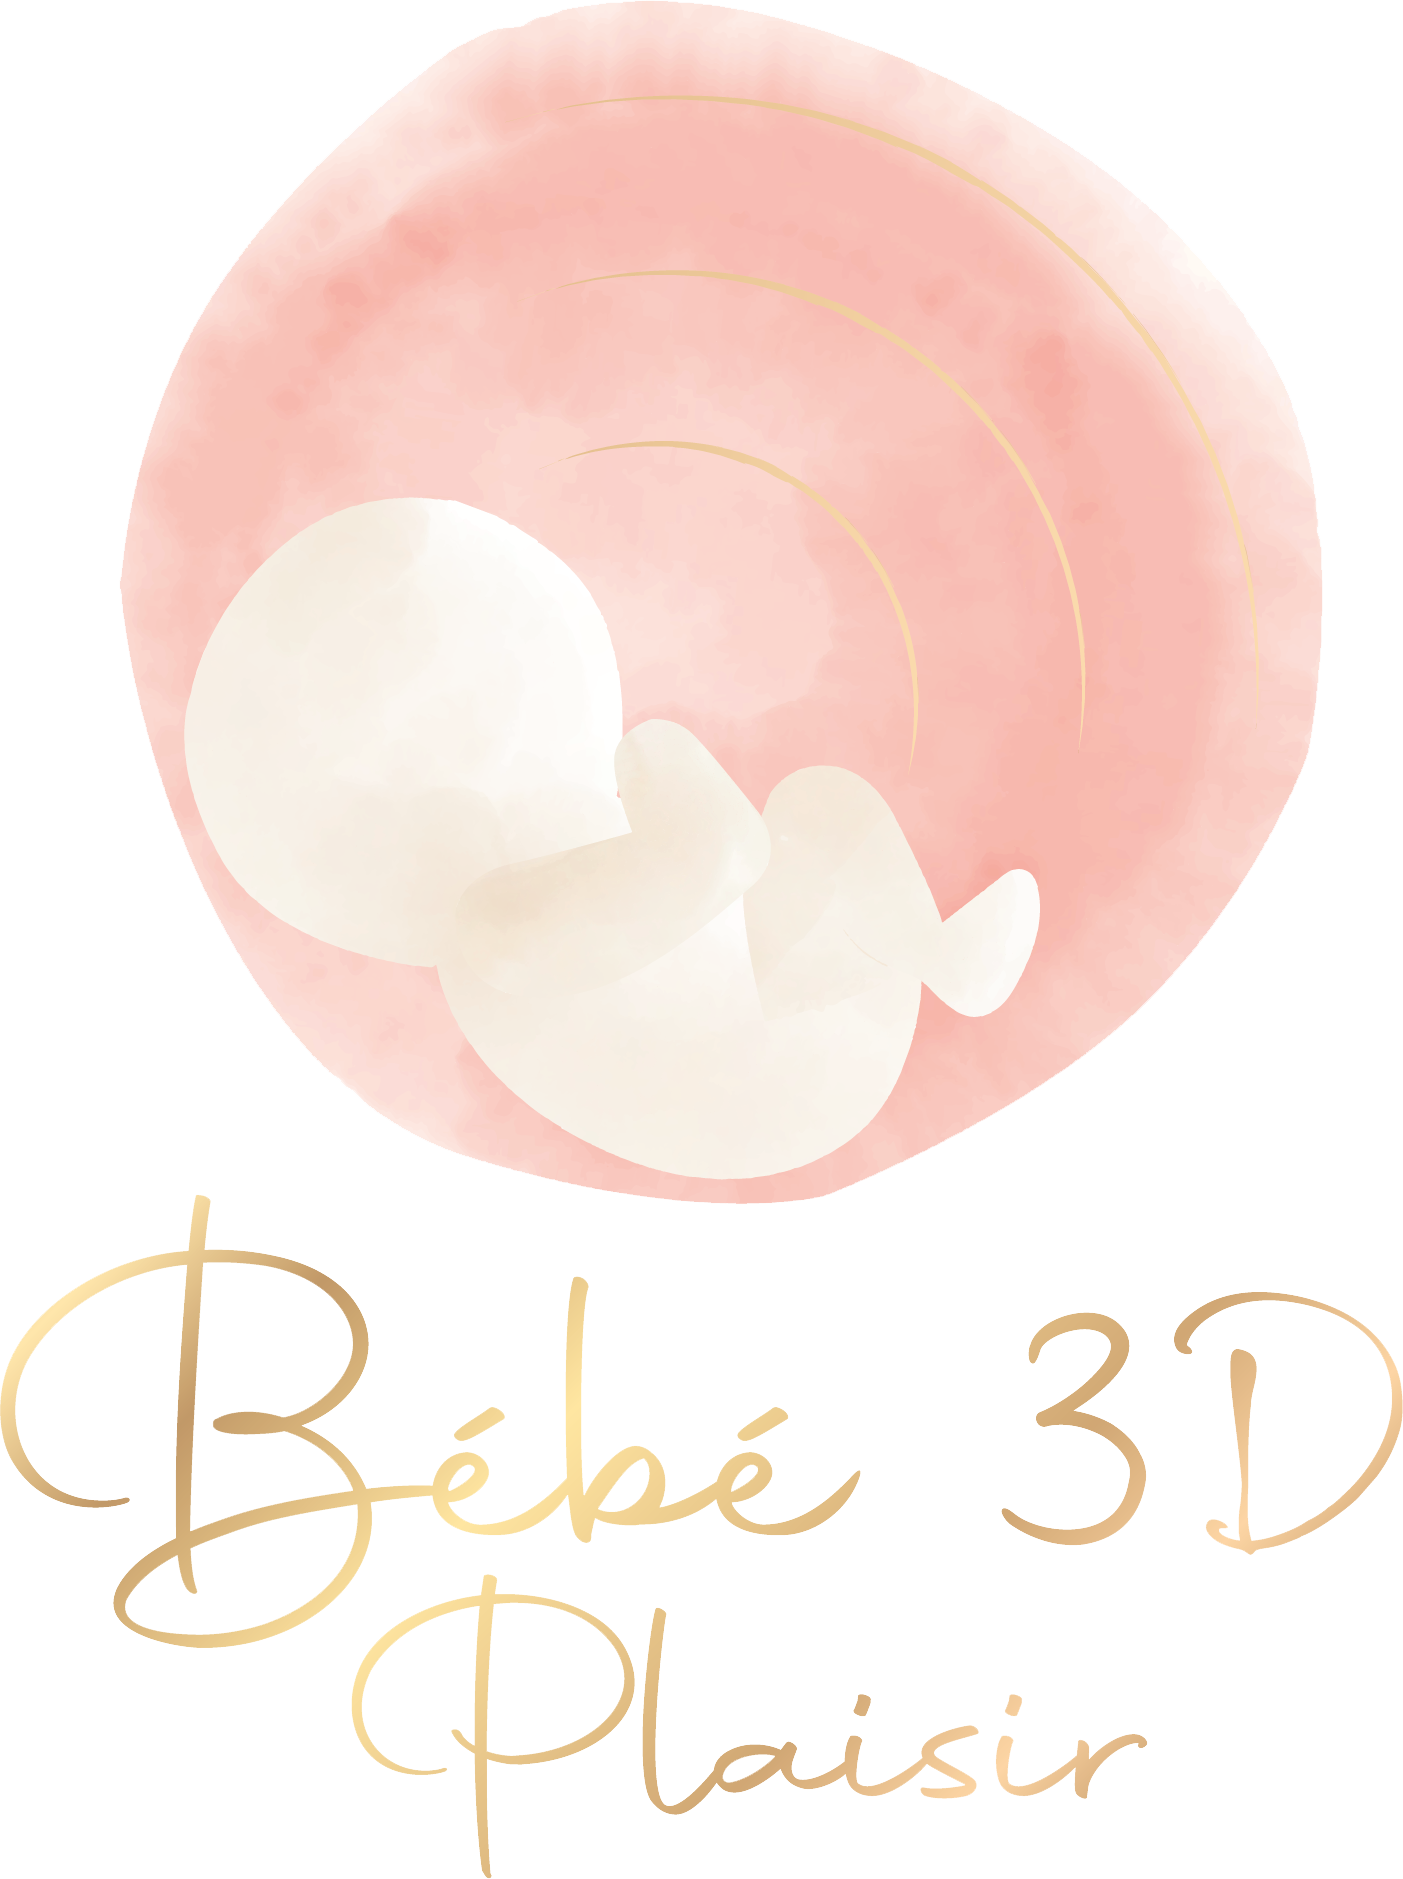 Bébé 3D Plaisir, échographies en 3D pour découvrir bébé !